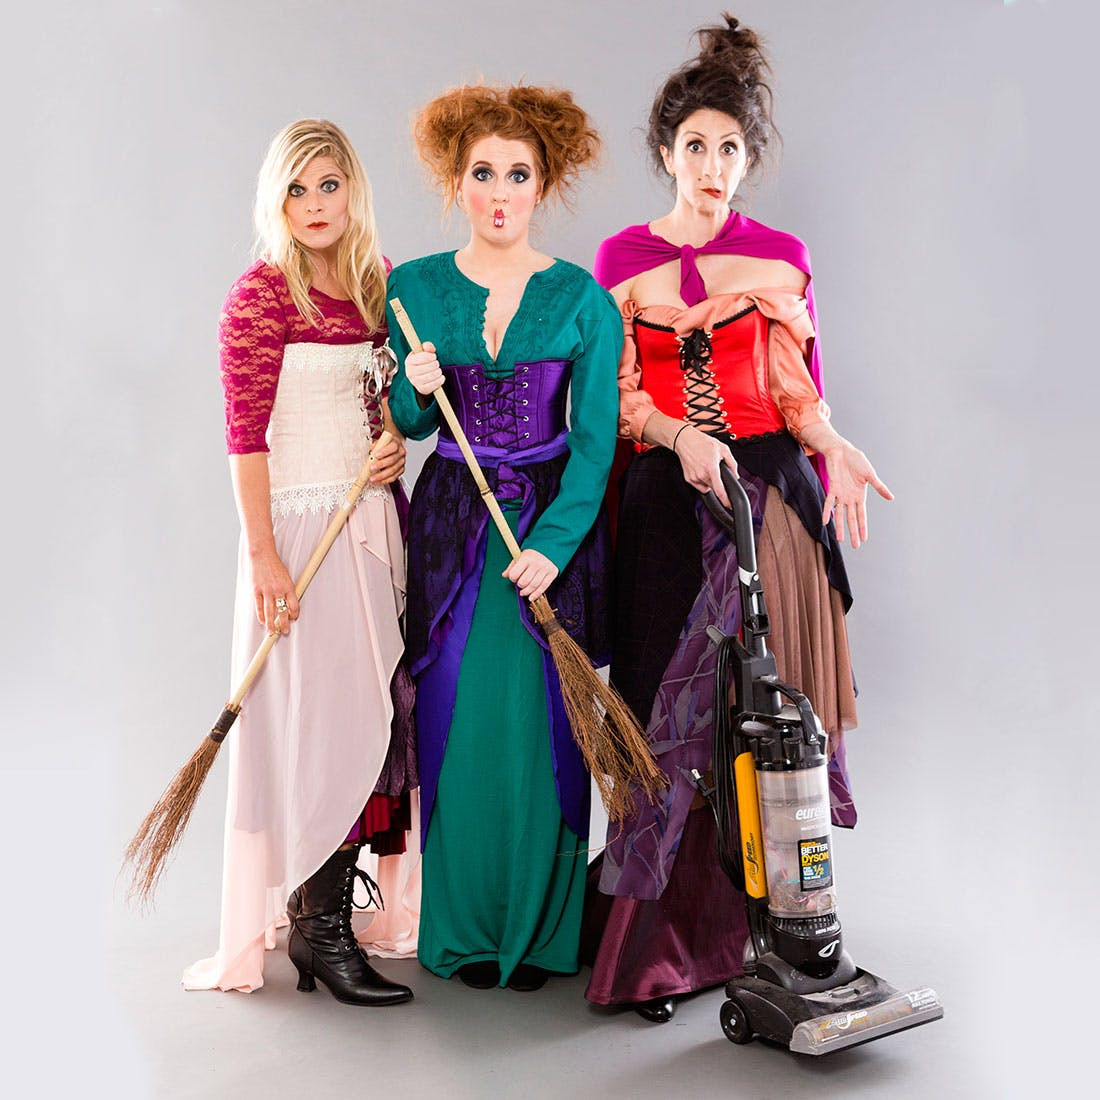 DIY Hocus Pocus Costumes
 DIY This Hocus Pocus Costumes for Your Main Witches